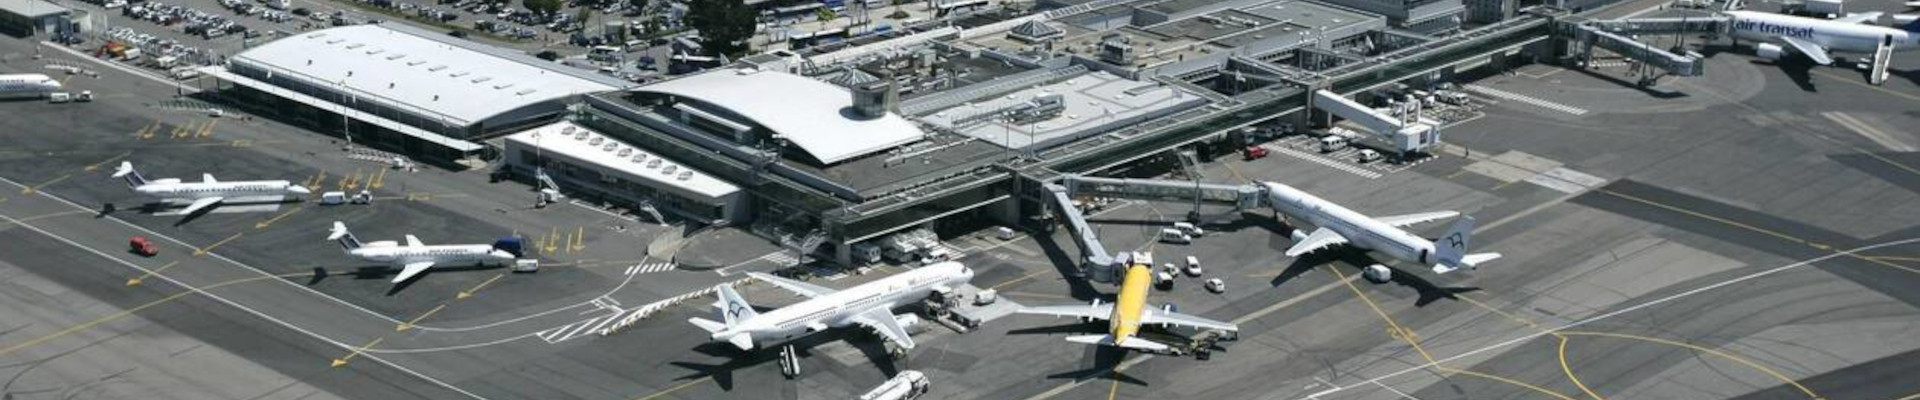 Aéroport de Nantes : les remises de gaz des avions « font trembler les murs » à Rezé